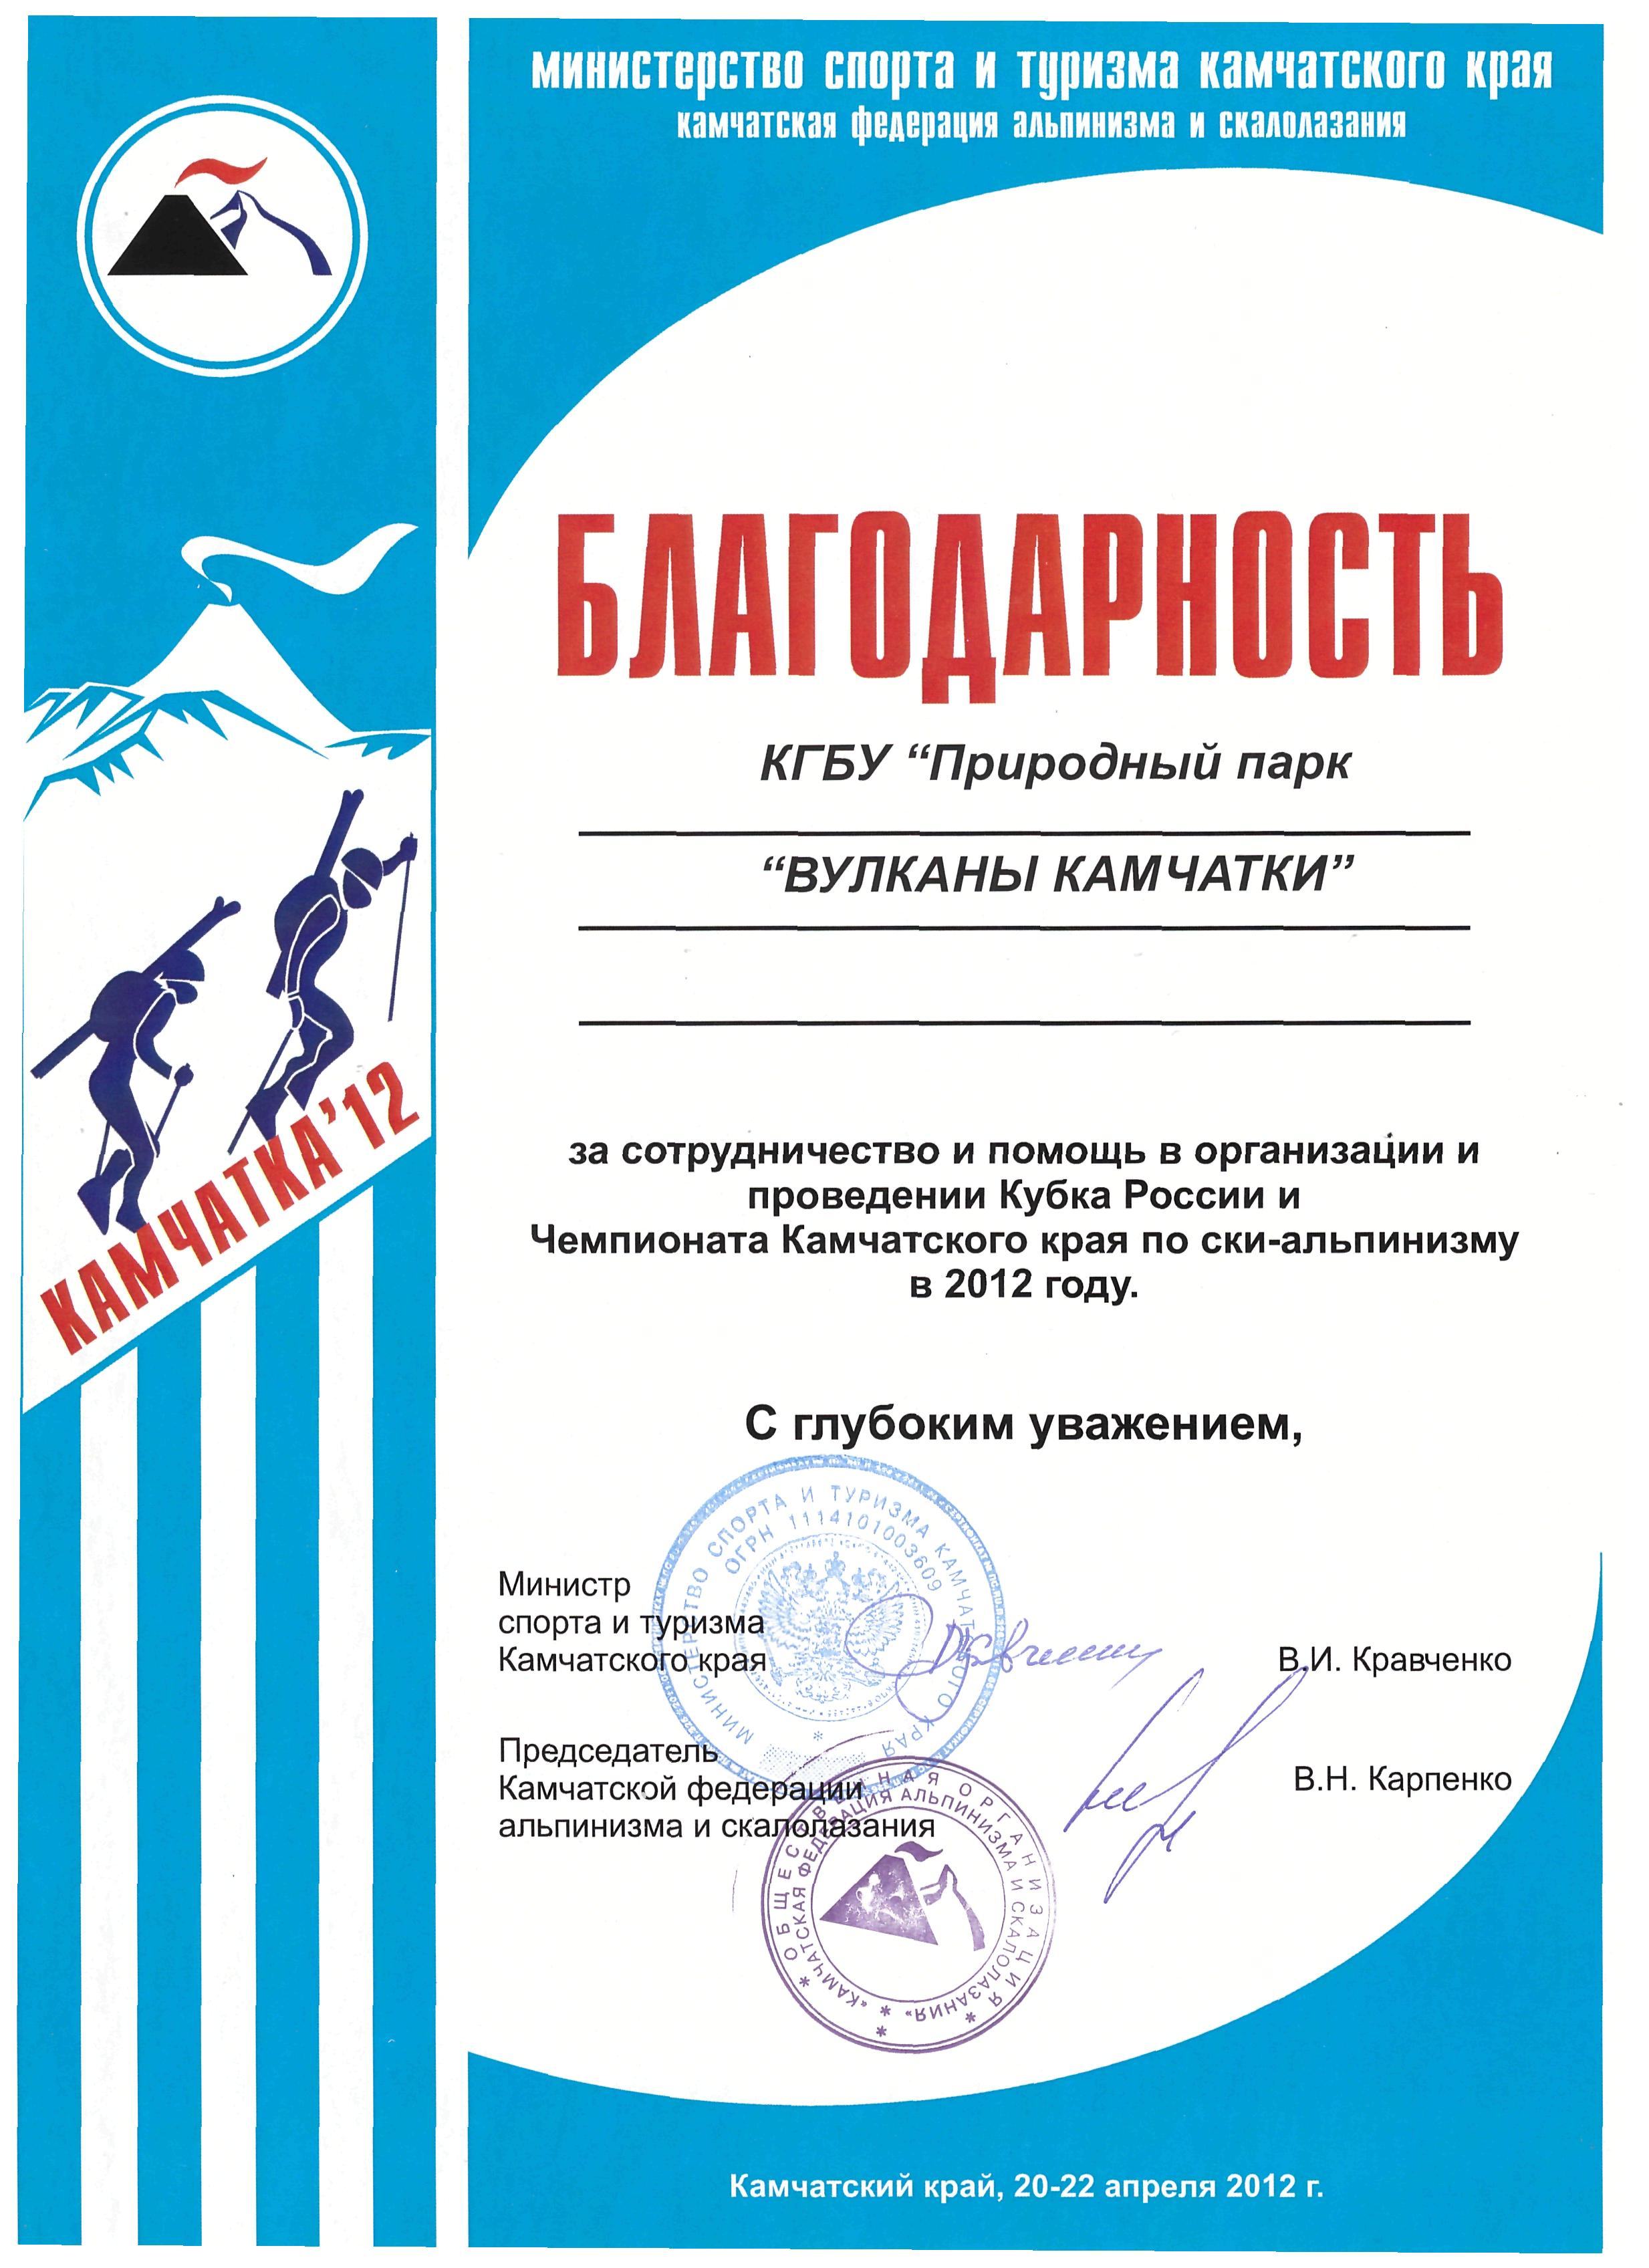 Благодарность за сотрудничество и помощь в проведении Кубка России и Чемпионата Камчатского края по ски-альпинизму в 2012 году